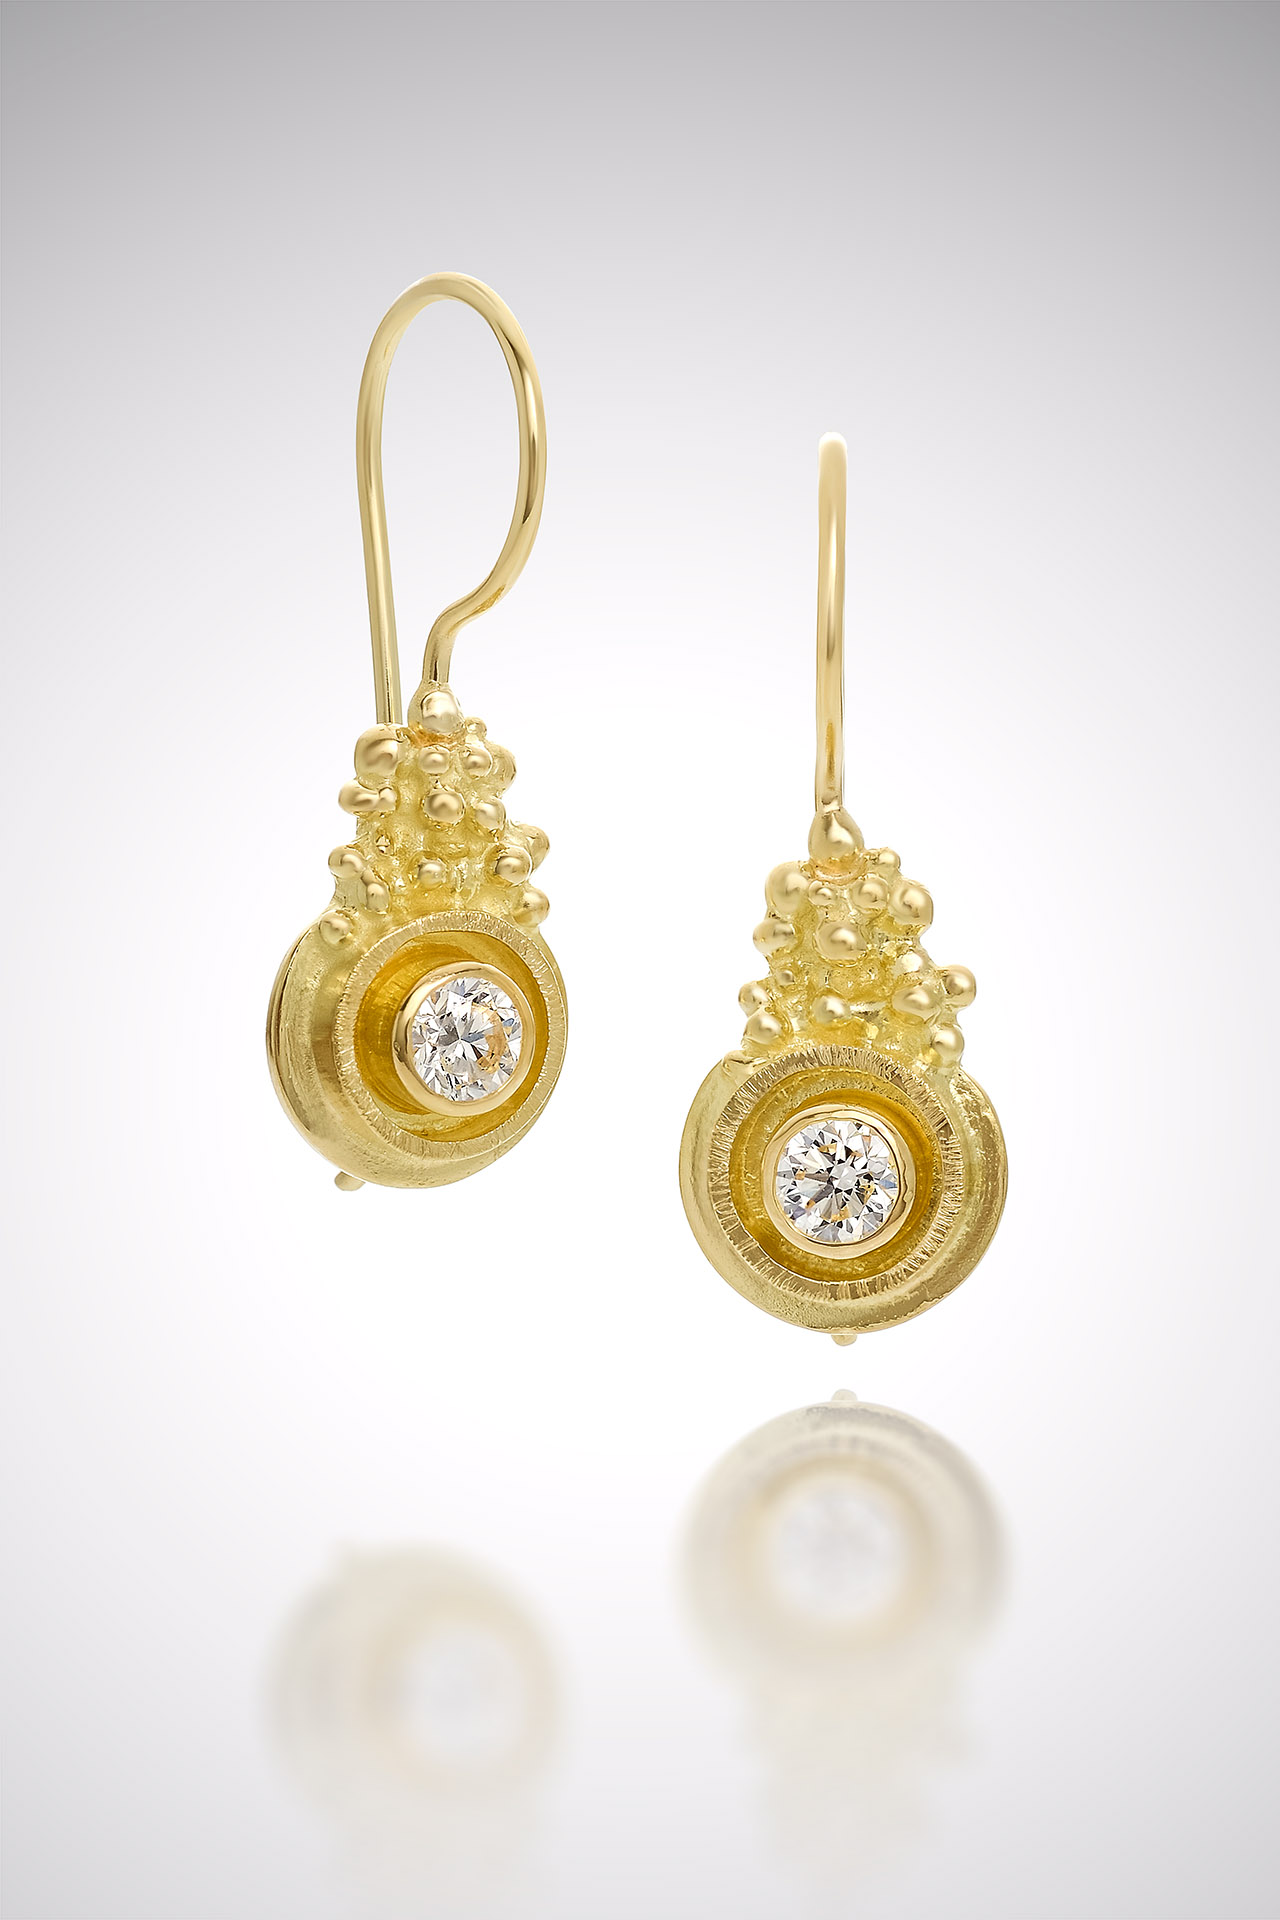 gold earrings daily wear gold earrings 👑👂💛 fancy earrings designs,gold  ring designs for wome… | Gold earrings for women, Gold earrings designs,  Gold ring designs